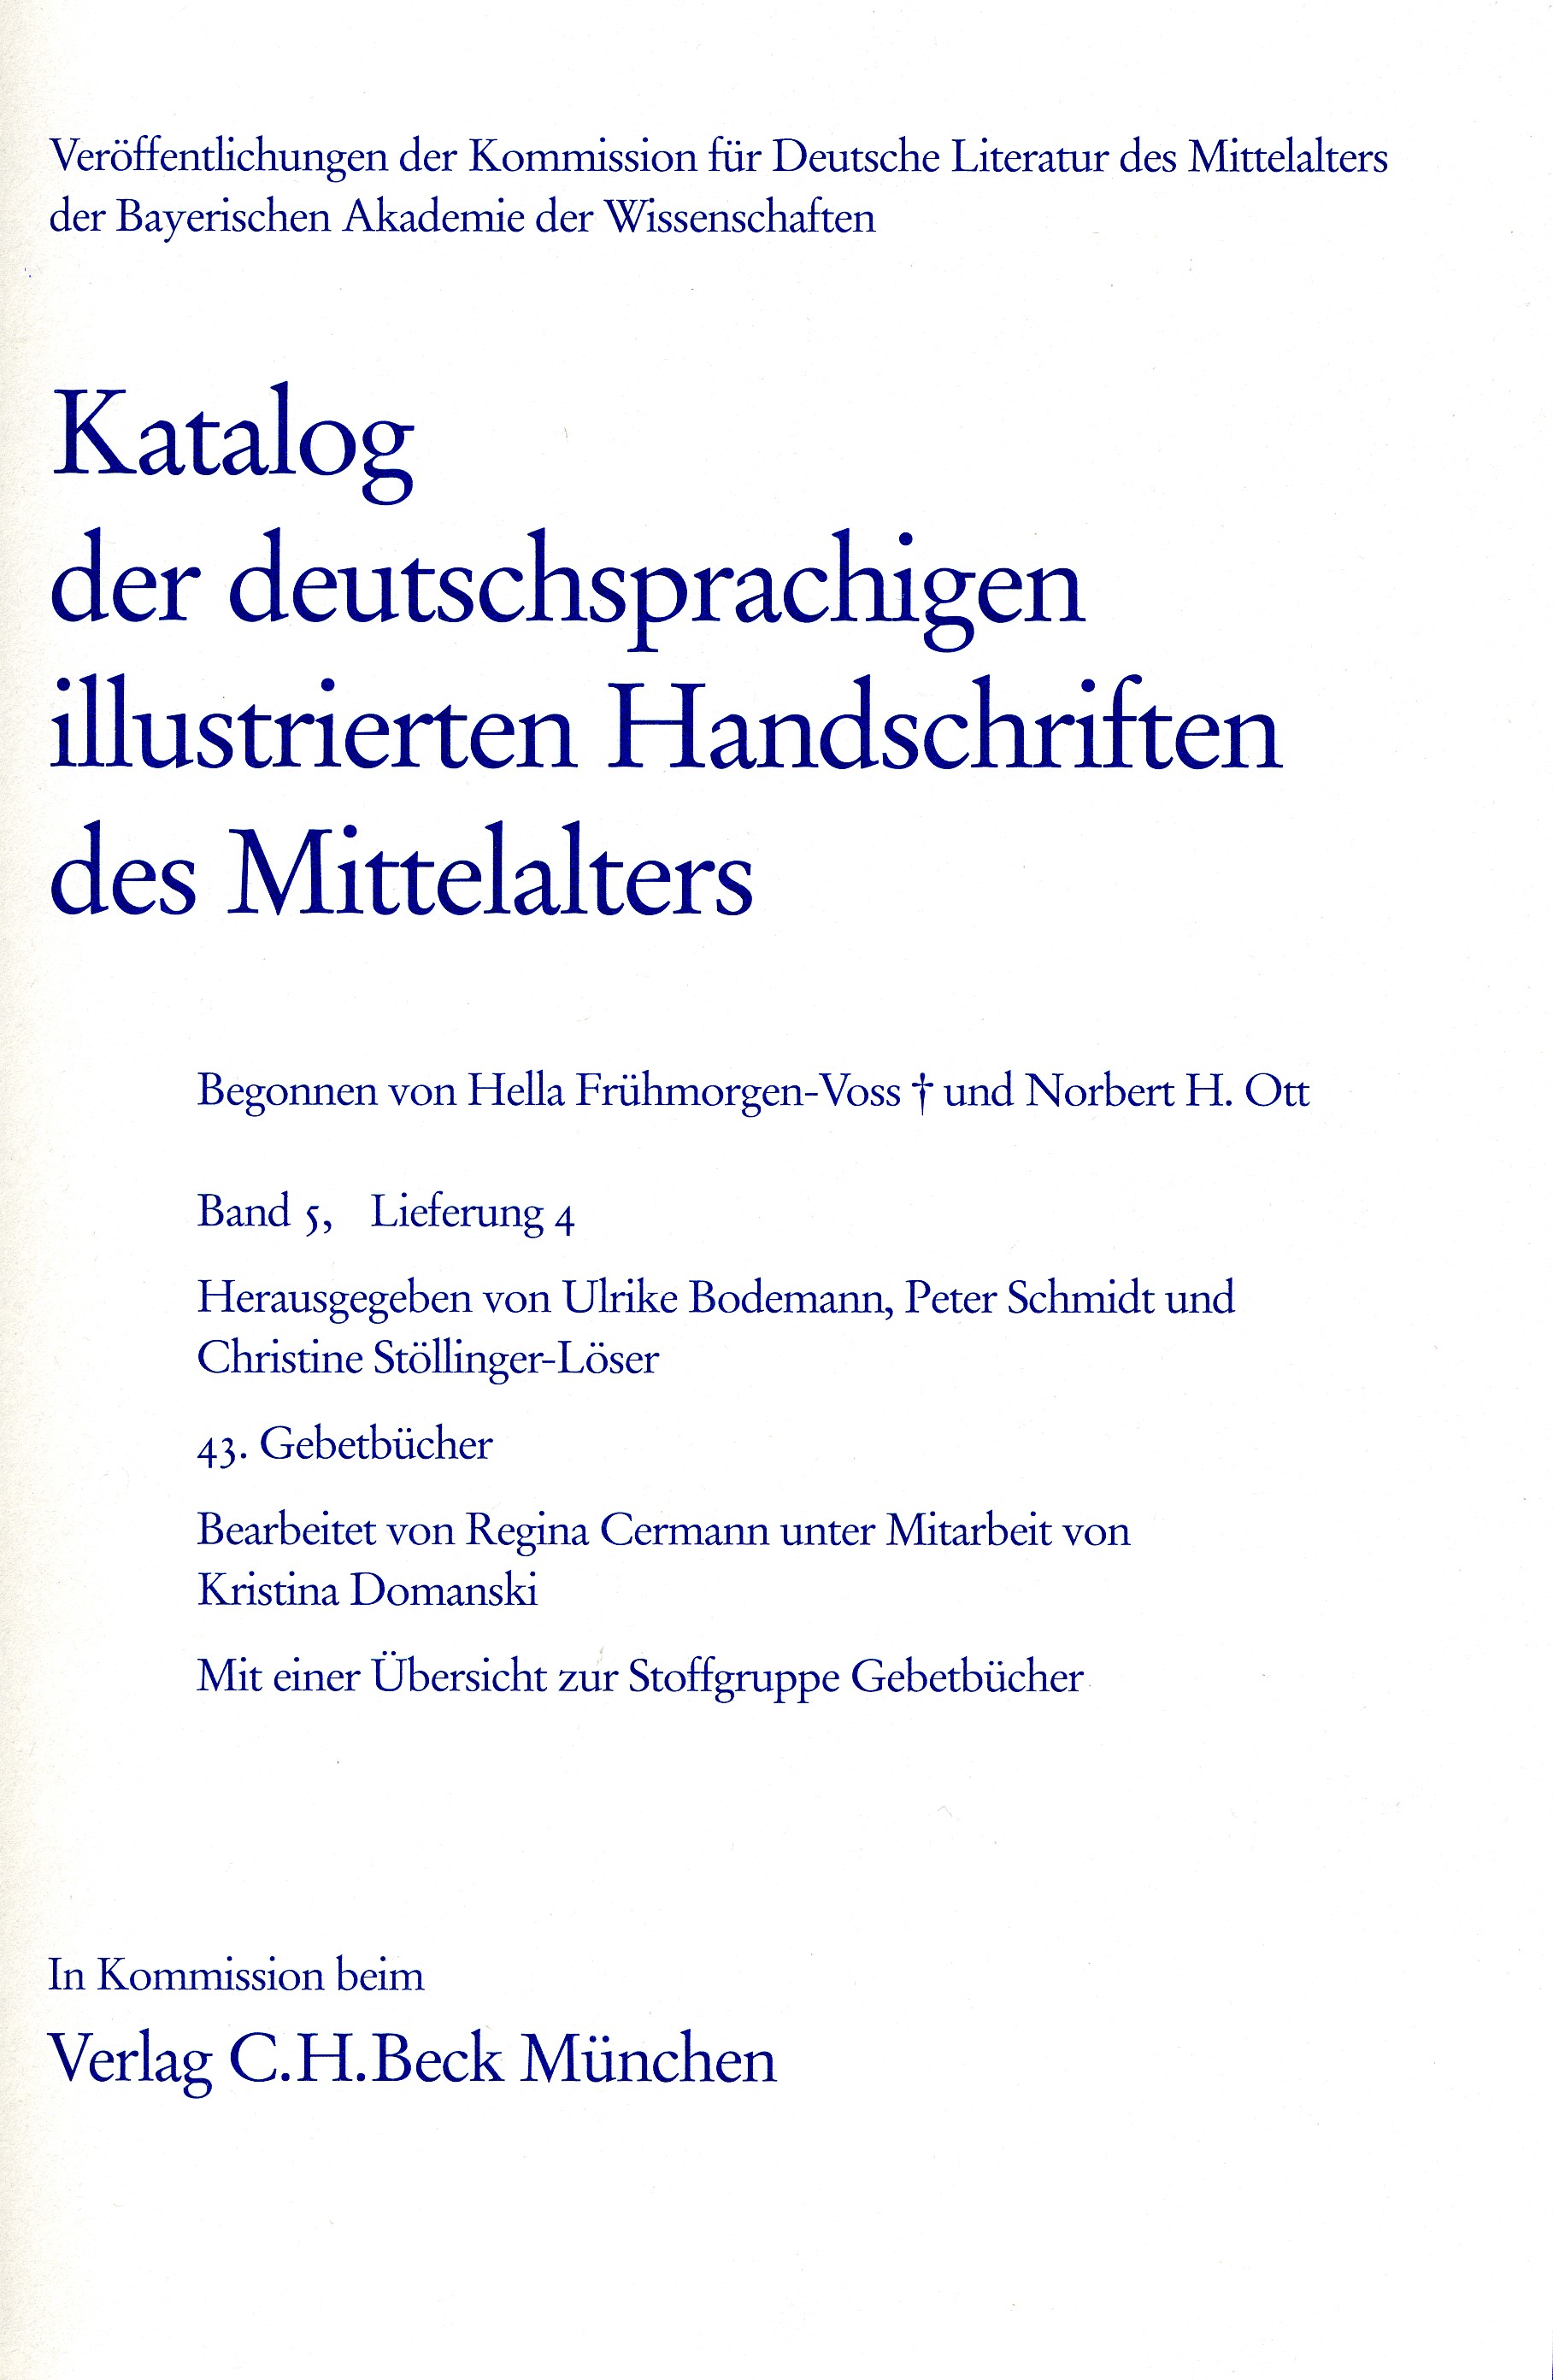 Cover: Bodemann, Ulrike /  Stöllinger-Löser, Christine / Schmidt, Peter 
, Katalog der deutschsprachigen illustrierten Handschriften des Mittelalters Band 5/1, Lfg. 4: 43